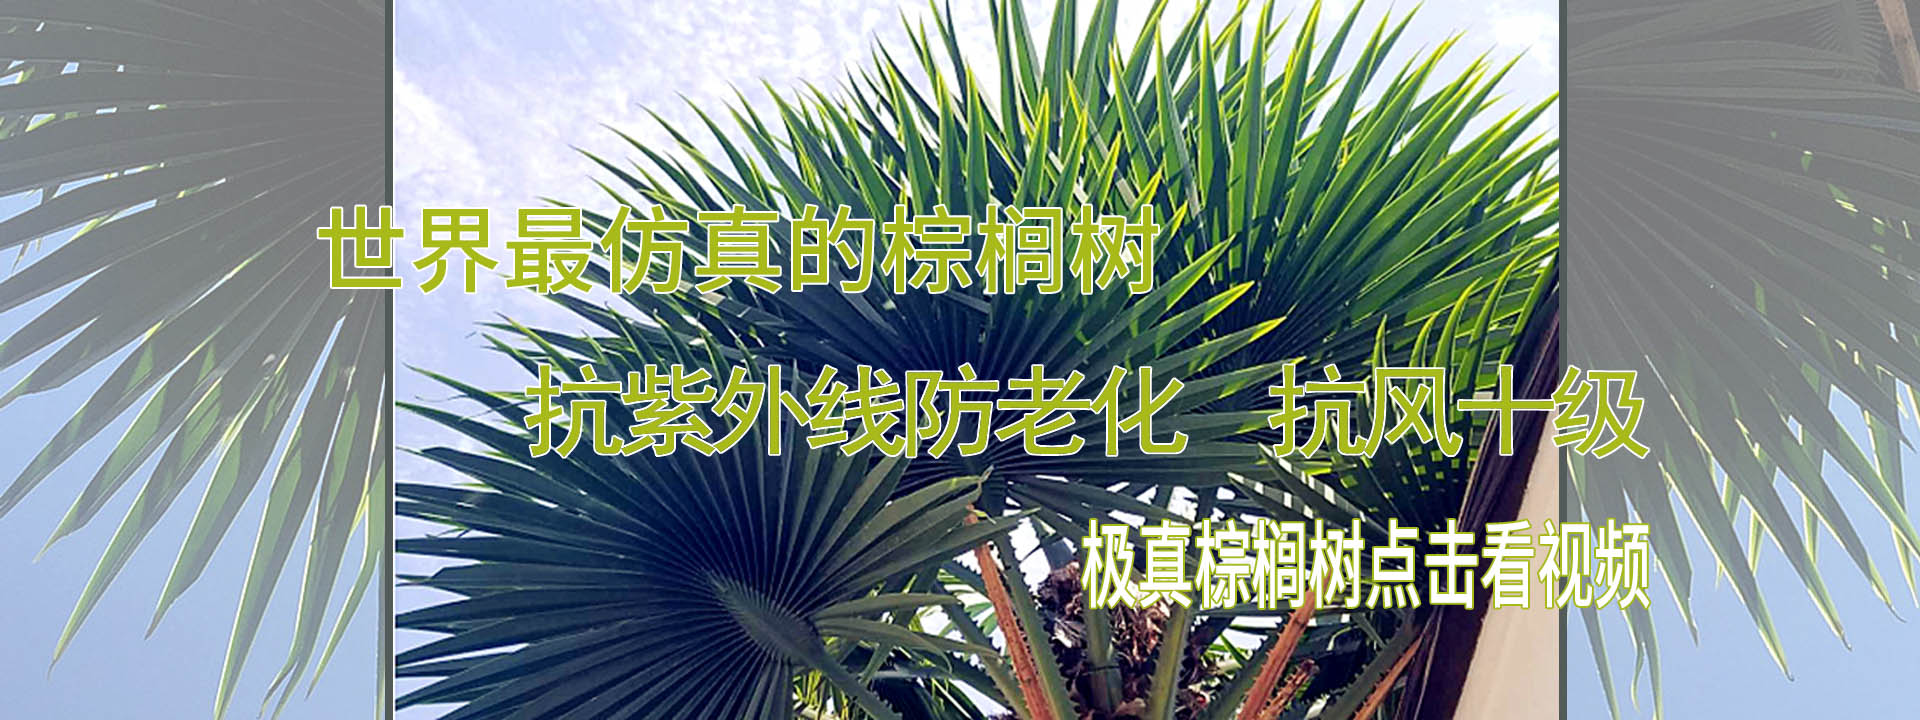 仿真椰子树 仿真棕榈树 仿真海枣树 北京棕榈树技术开发有限公司